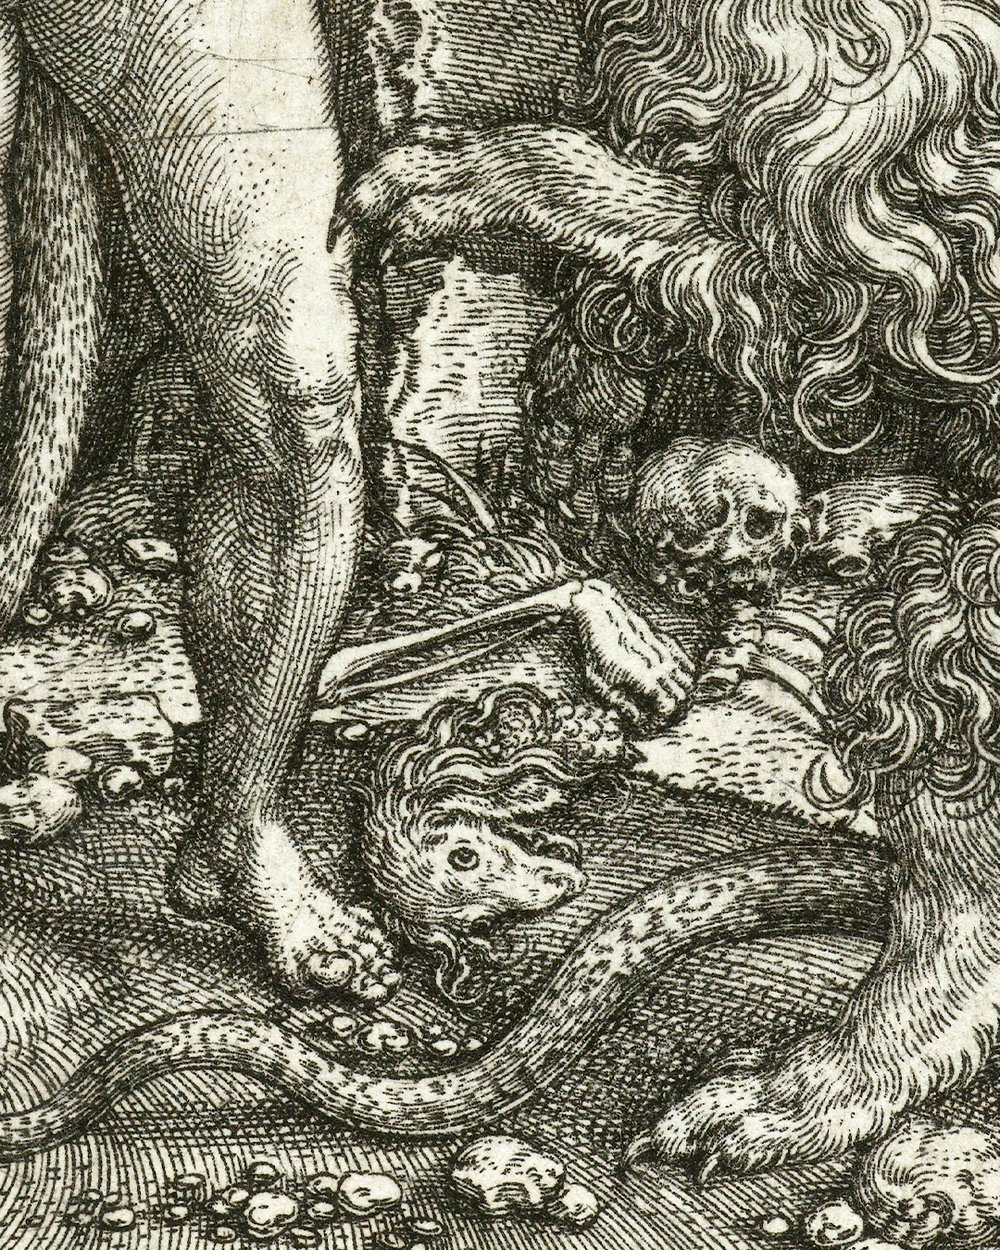 ''Hercules slaying the Lernaean Hydra'' (1550)